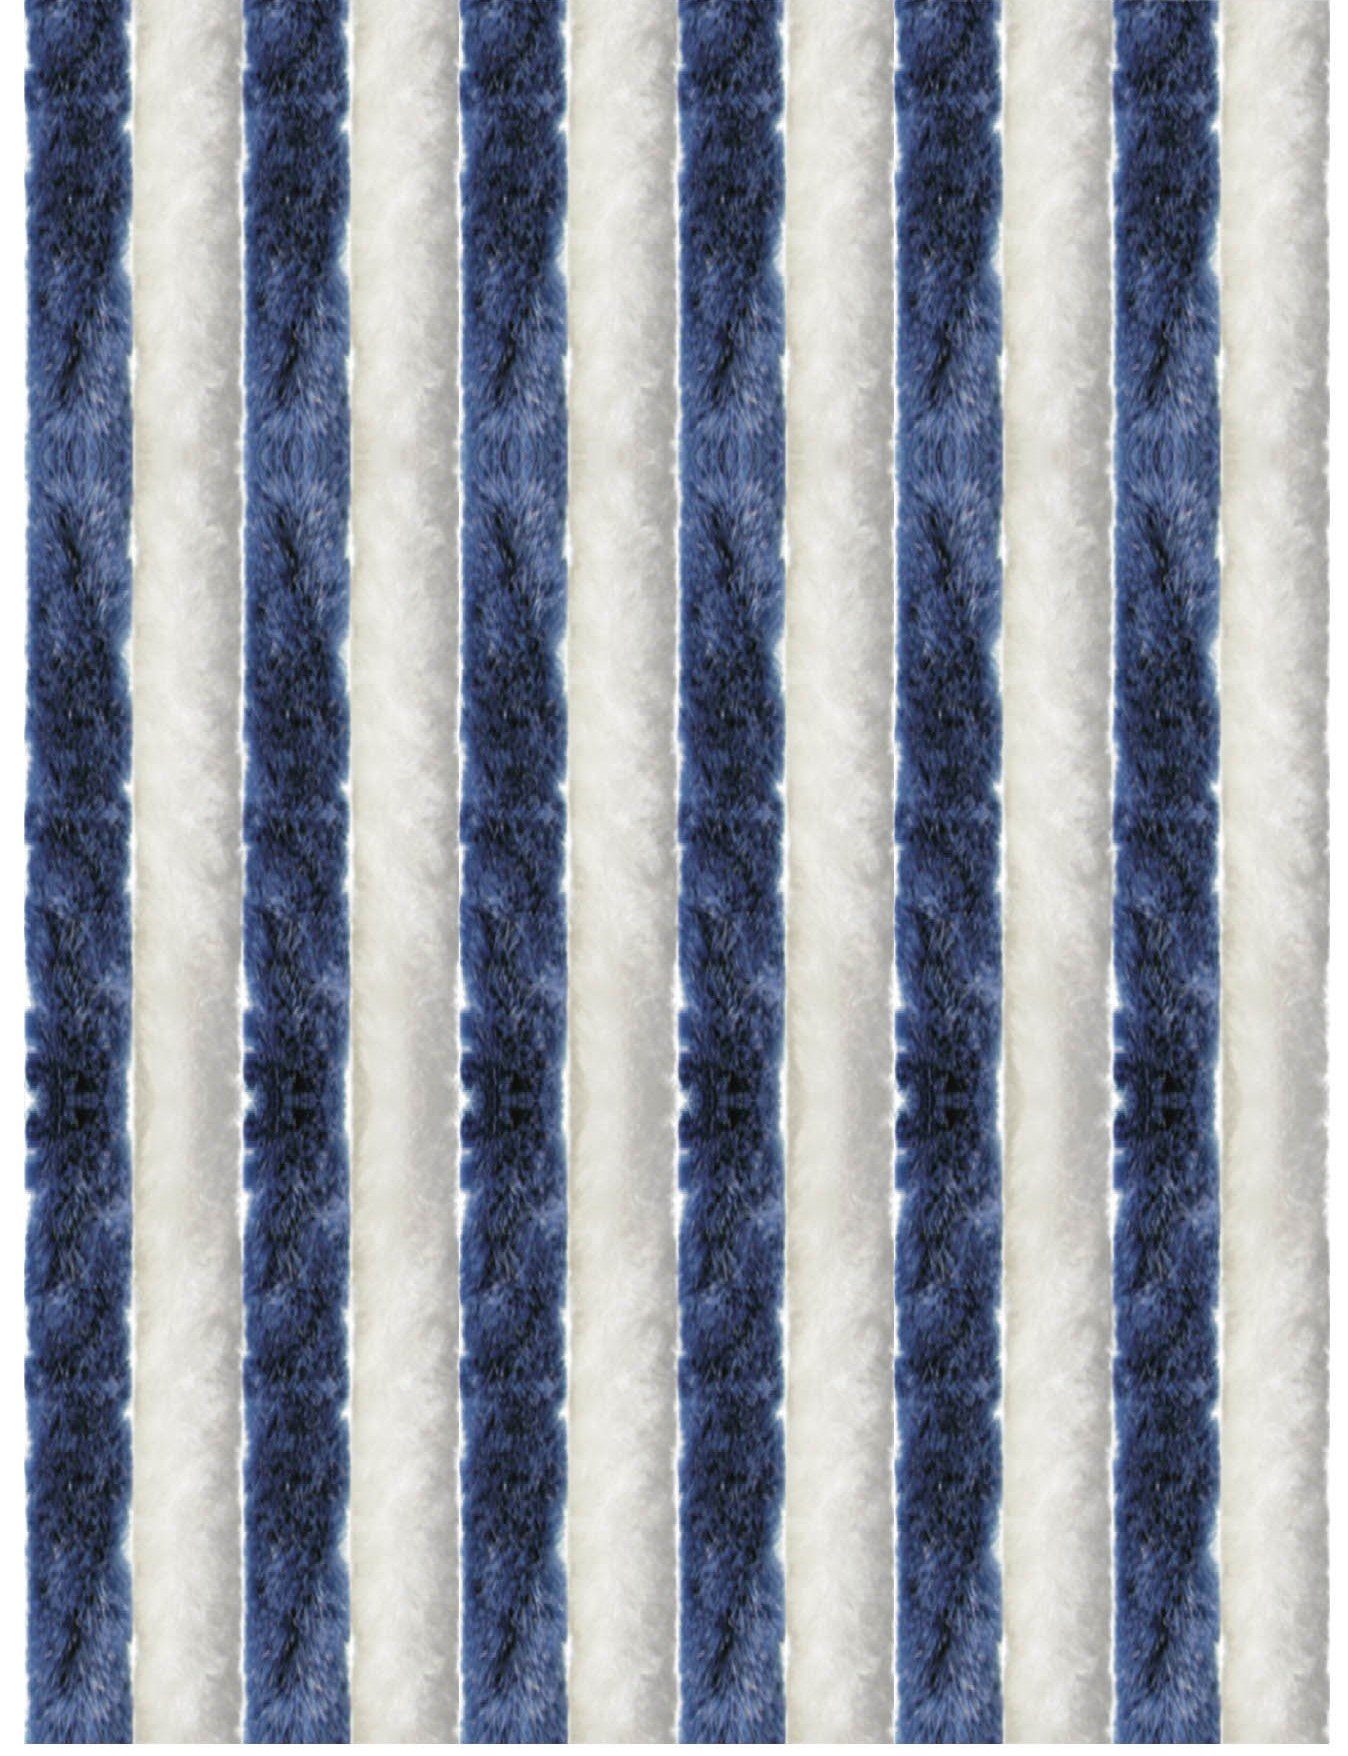 Türvorhang Flauschi, Arsvita, Ösen (1 St), Flauschvorhang 160x185 cm in Unistreifen dunkelblau - weiß, viele Farben